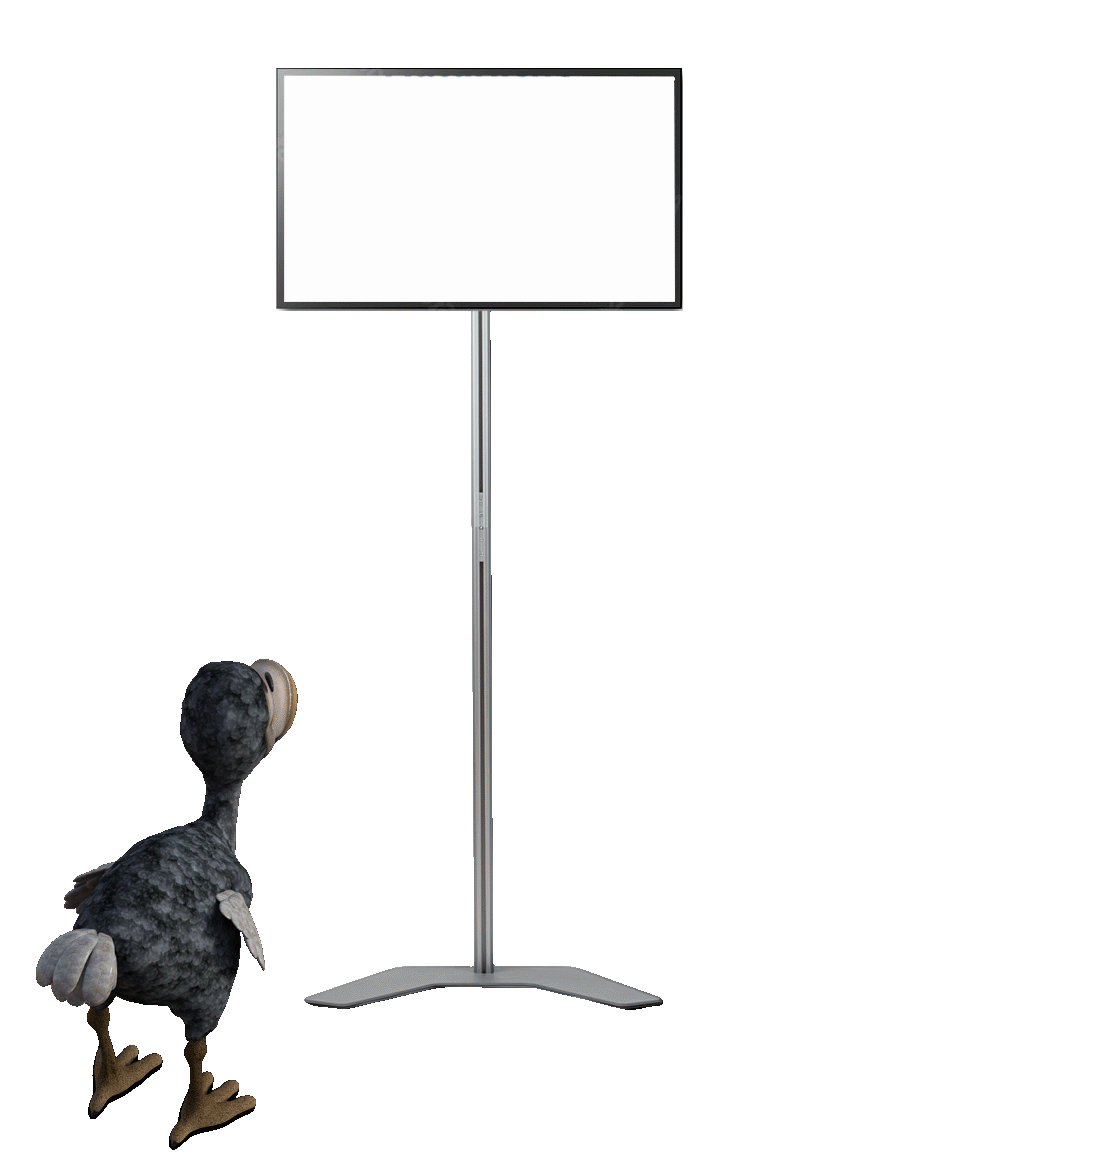 Dodo vor Monitorhalterung mit Bildschirm, auf dem eine Präsentation über Charles Darwin und Natürliche Selektion läuft